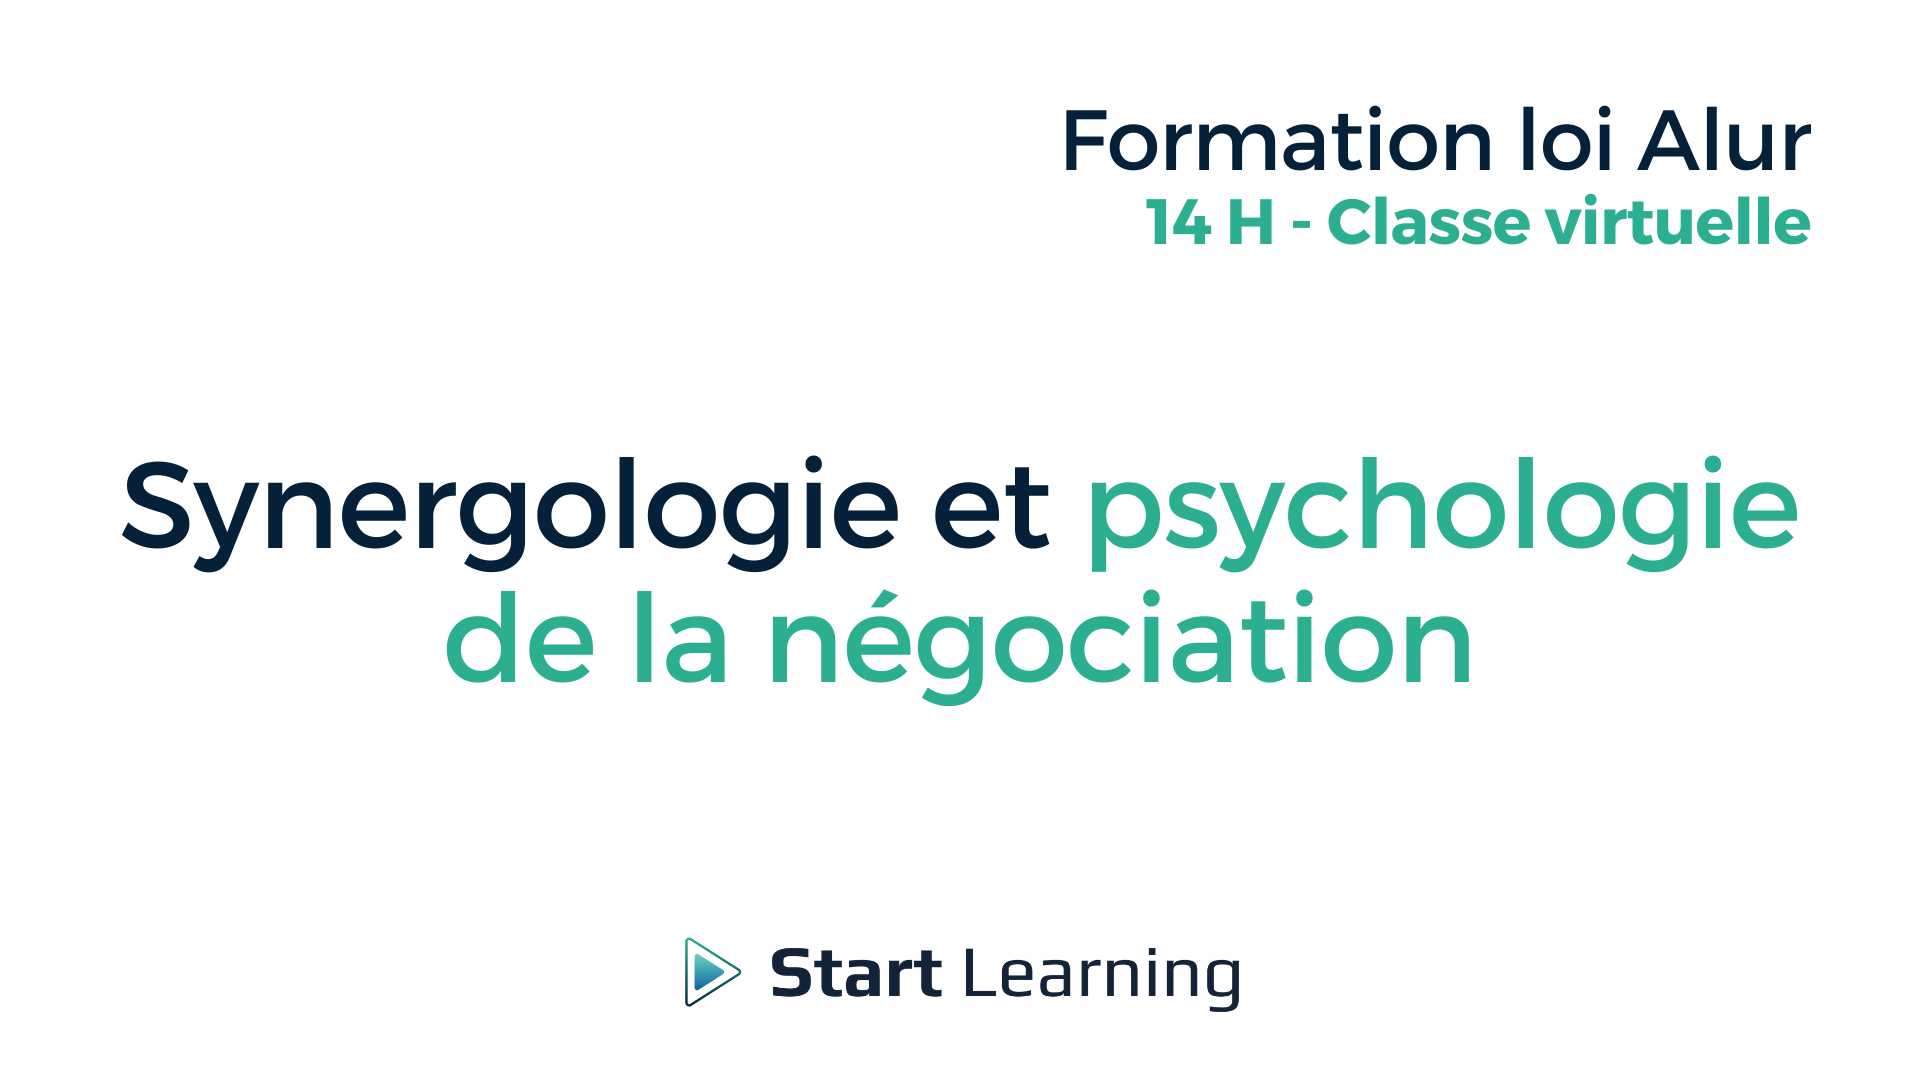 Formation loi Alur - Synergologie et psychologie de la négociation - Classe virtuelle